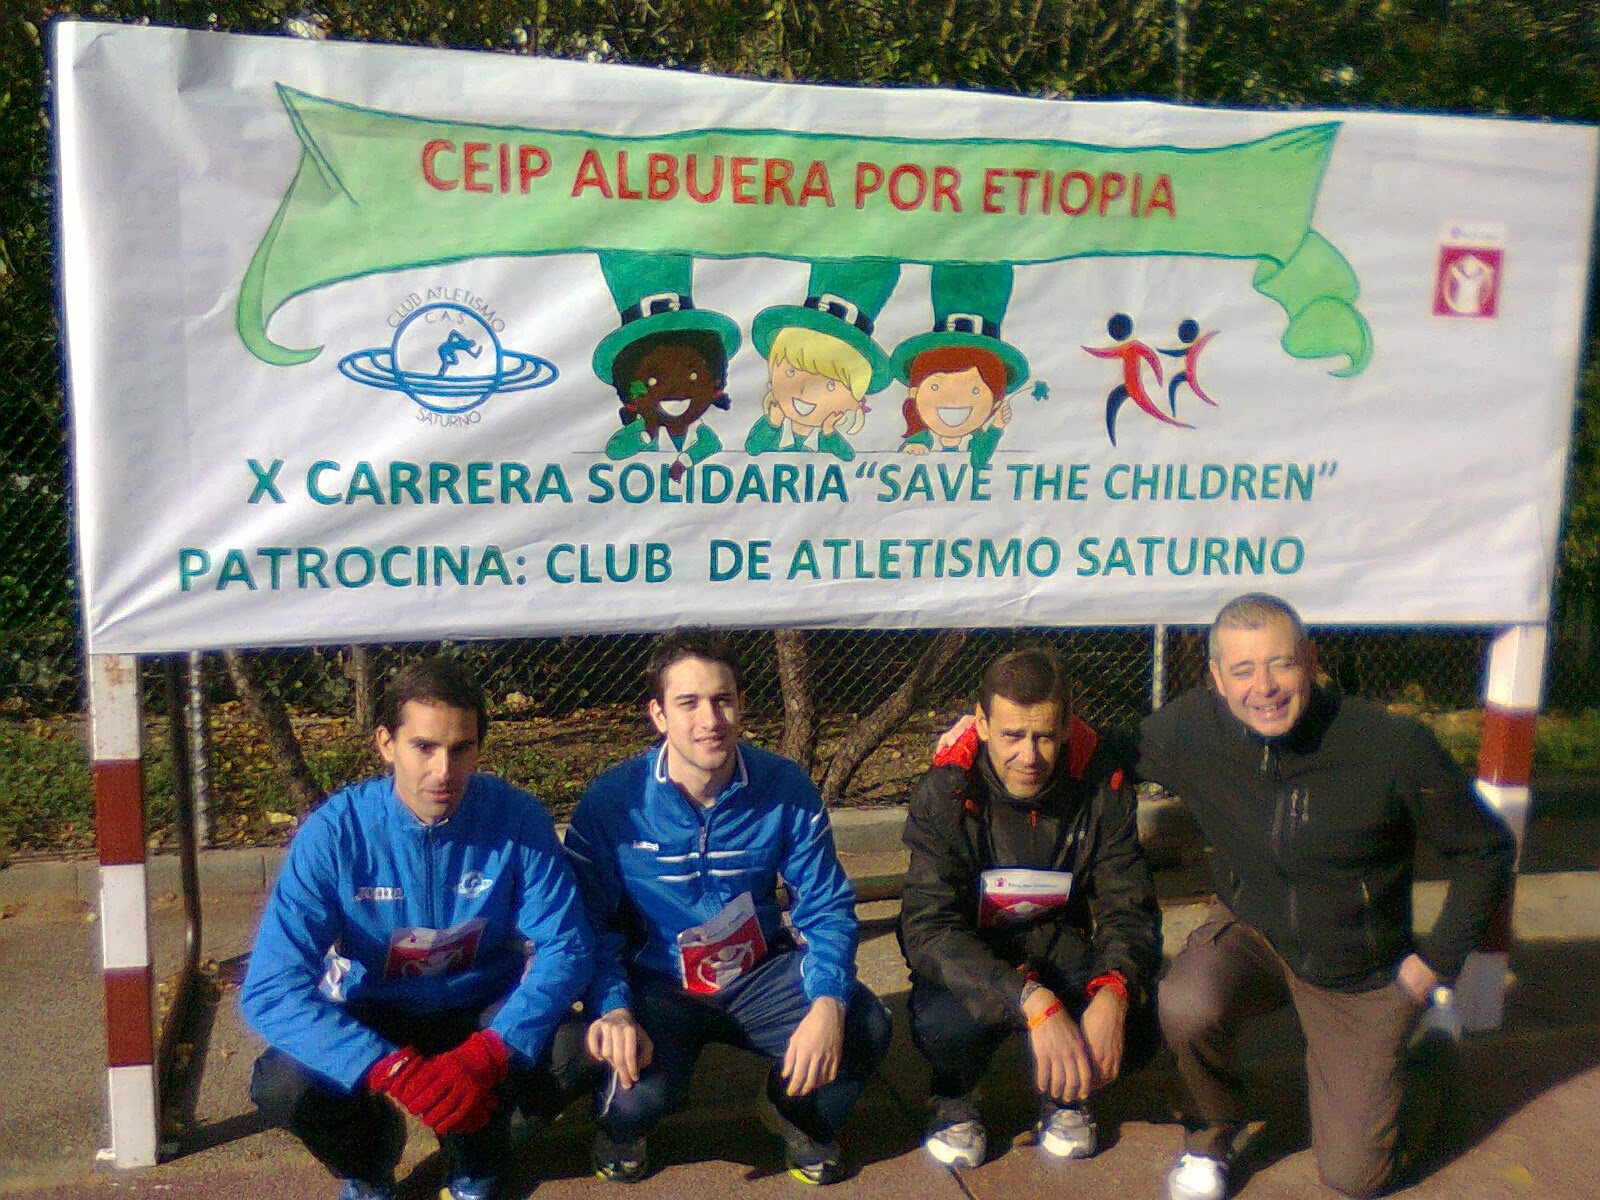 Carrera Solidaria Colegio Albuera